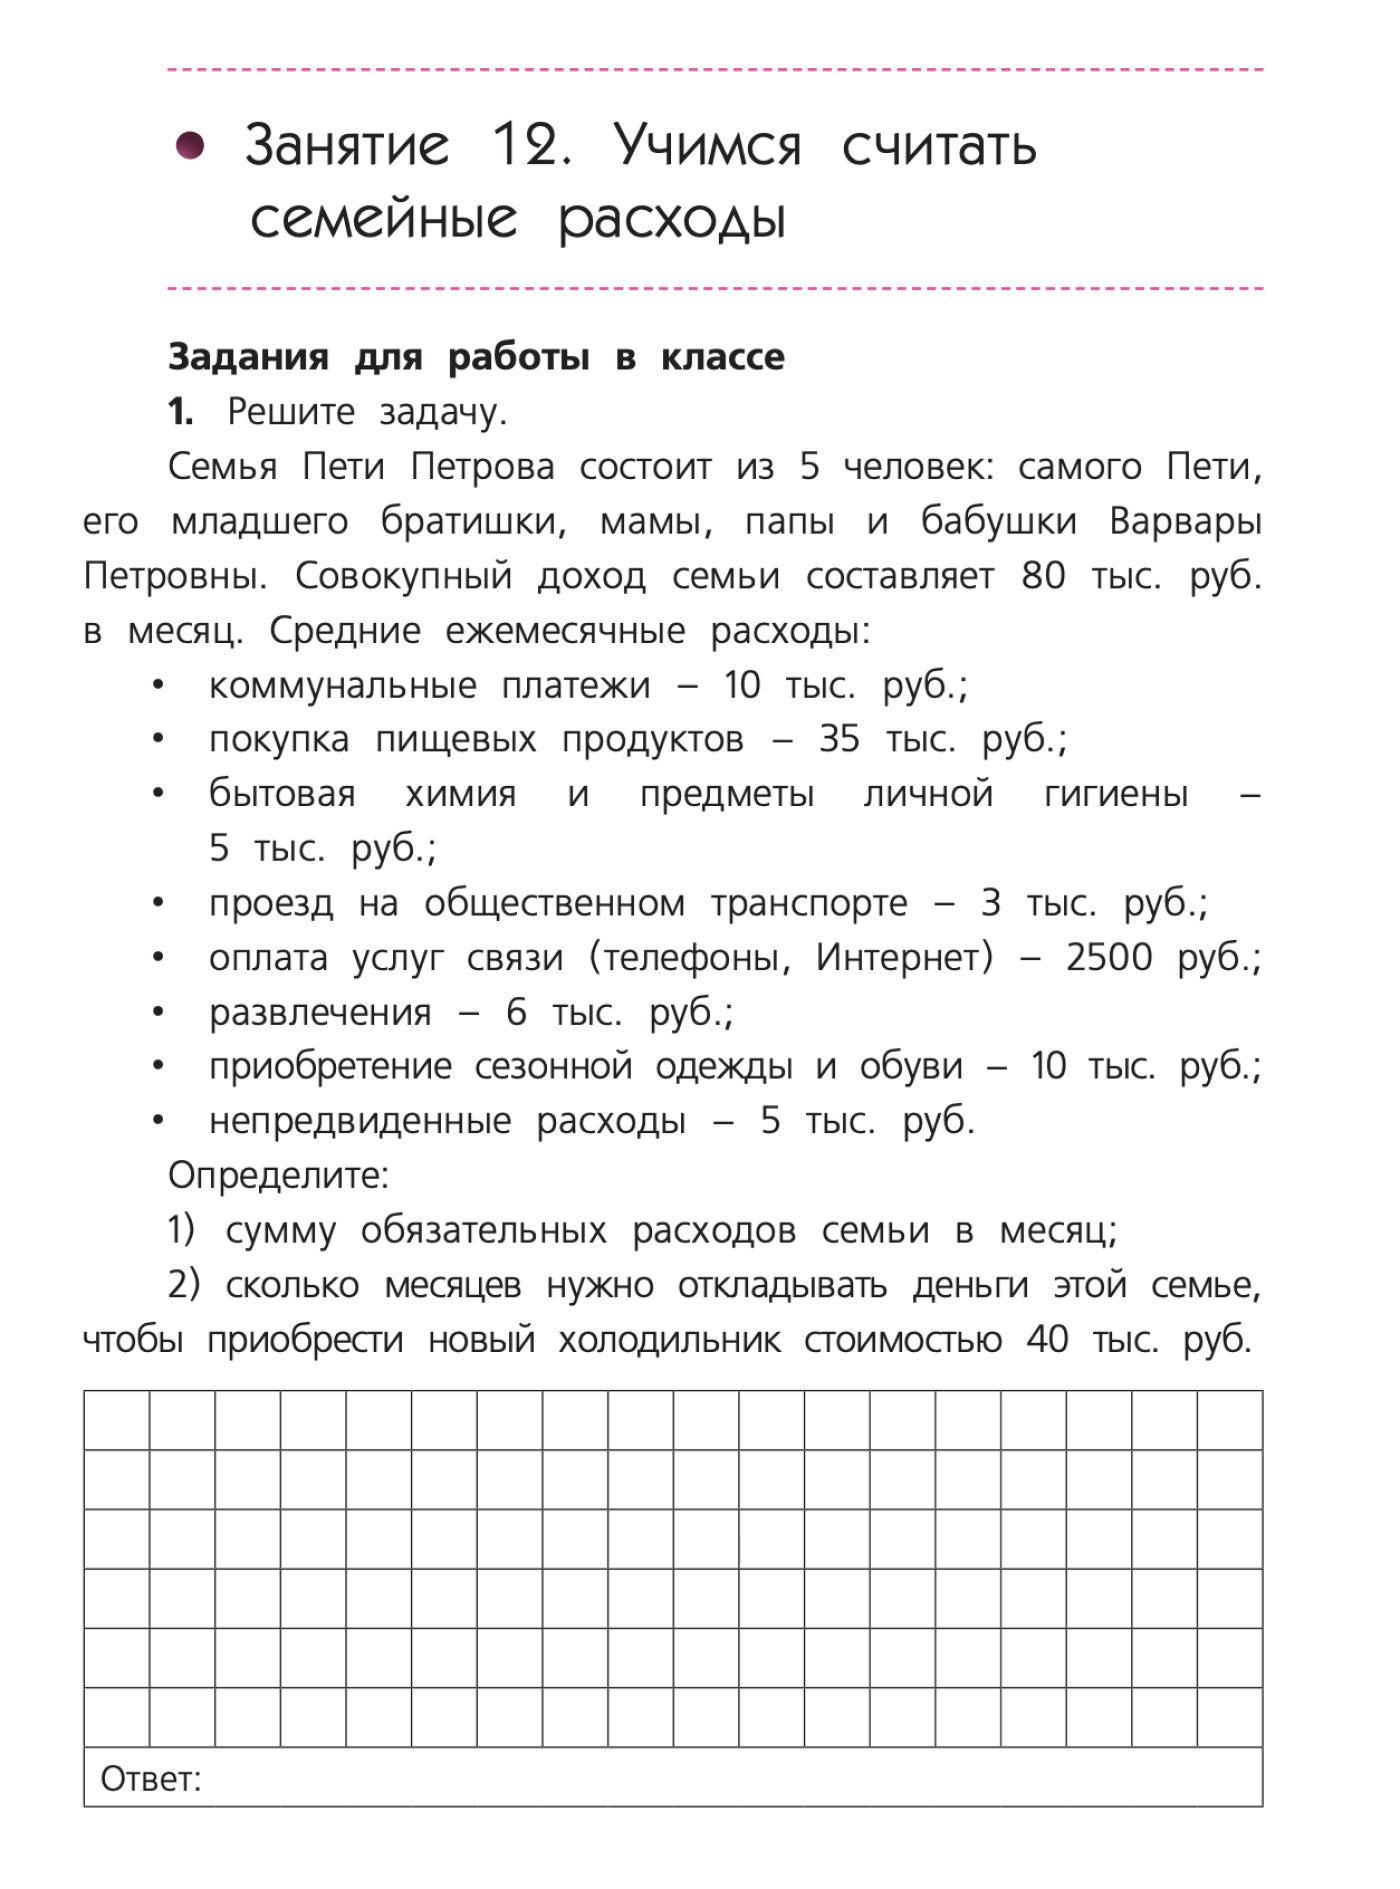 Пример задания на составление бюджета из рабочей тетради «Финансовая грамотность» Юлии Корлюговой и Анастасии Половниковой для пятых — седьмых классов